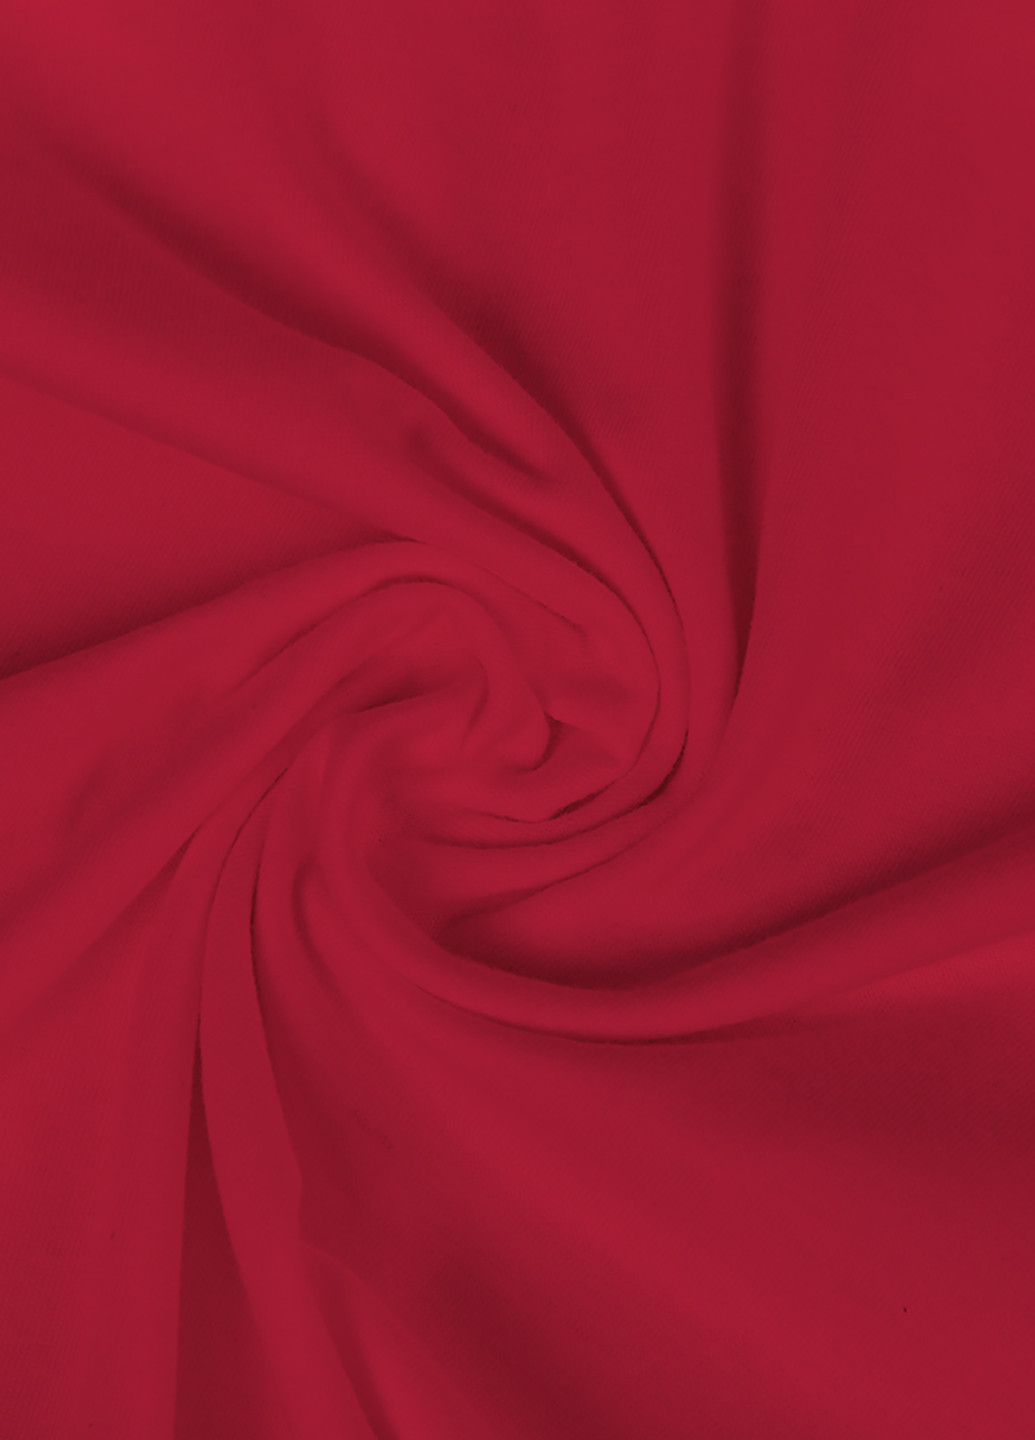 Красная демисезонная футболка детская амонг ас (among us)(9224-2431) MobiPrint